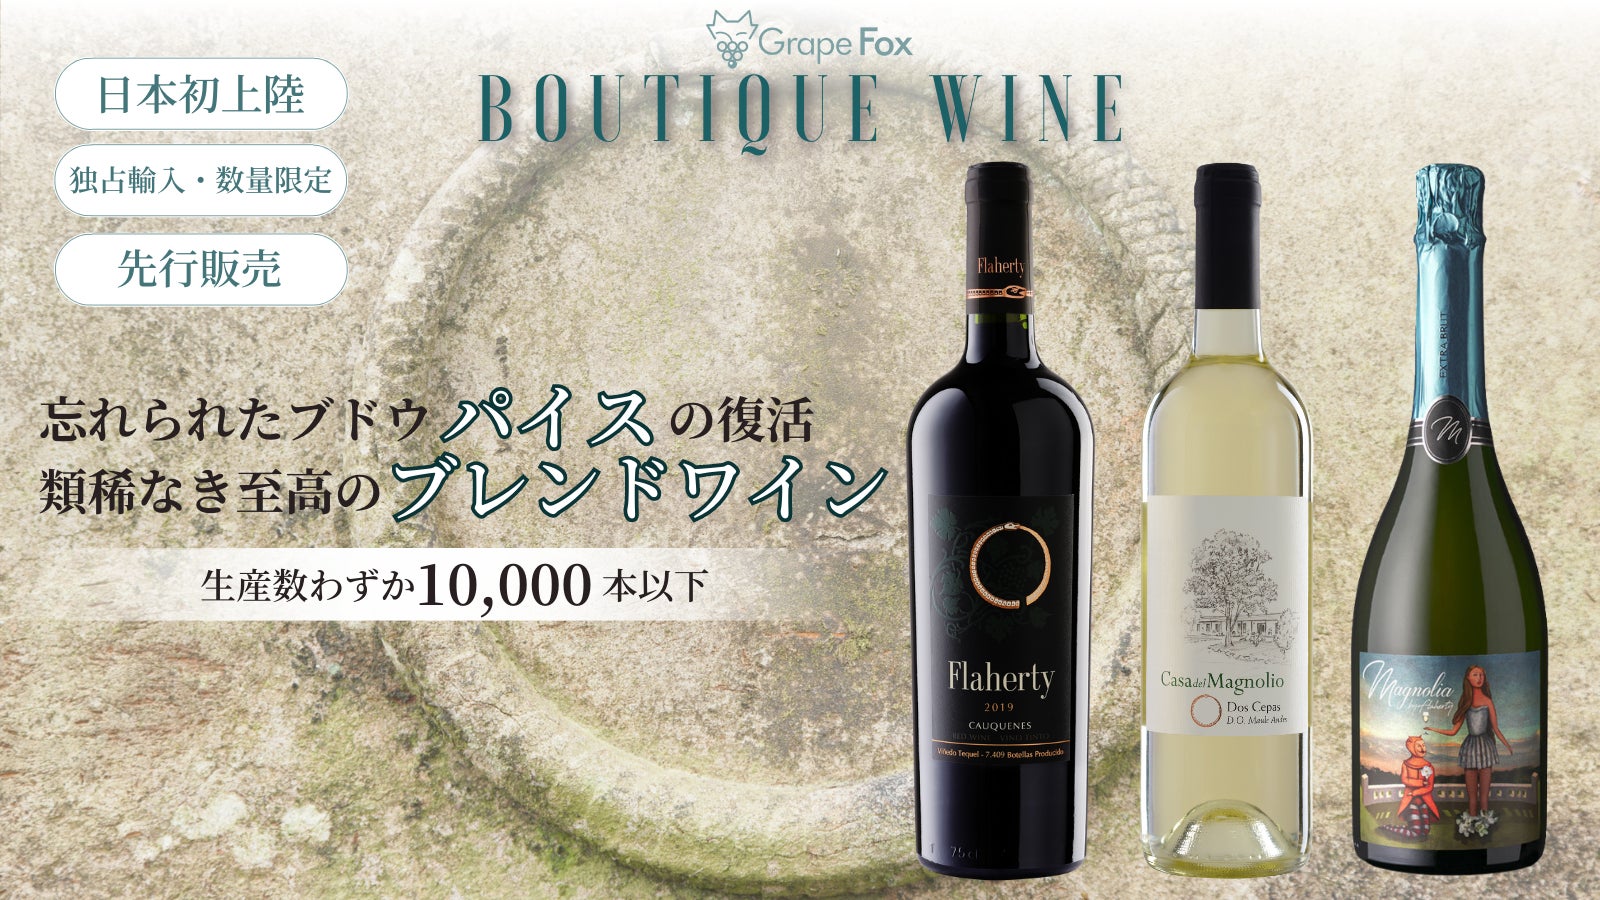 生産数10,000本以下の少量生産ワインを販売するGrapeFox、ブドウの楽園チリから忘れられたブドウ『パイス』のブレンドワインを日本初輸入、「Makuake」にて先行・限定販売プロジェクトを開始